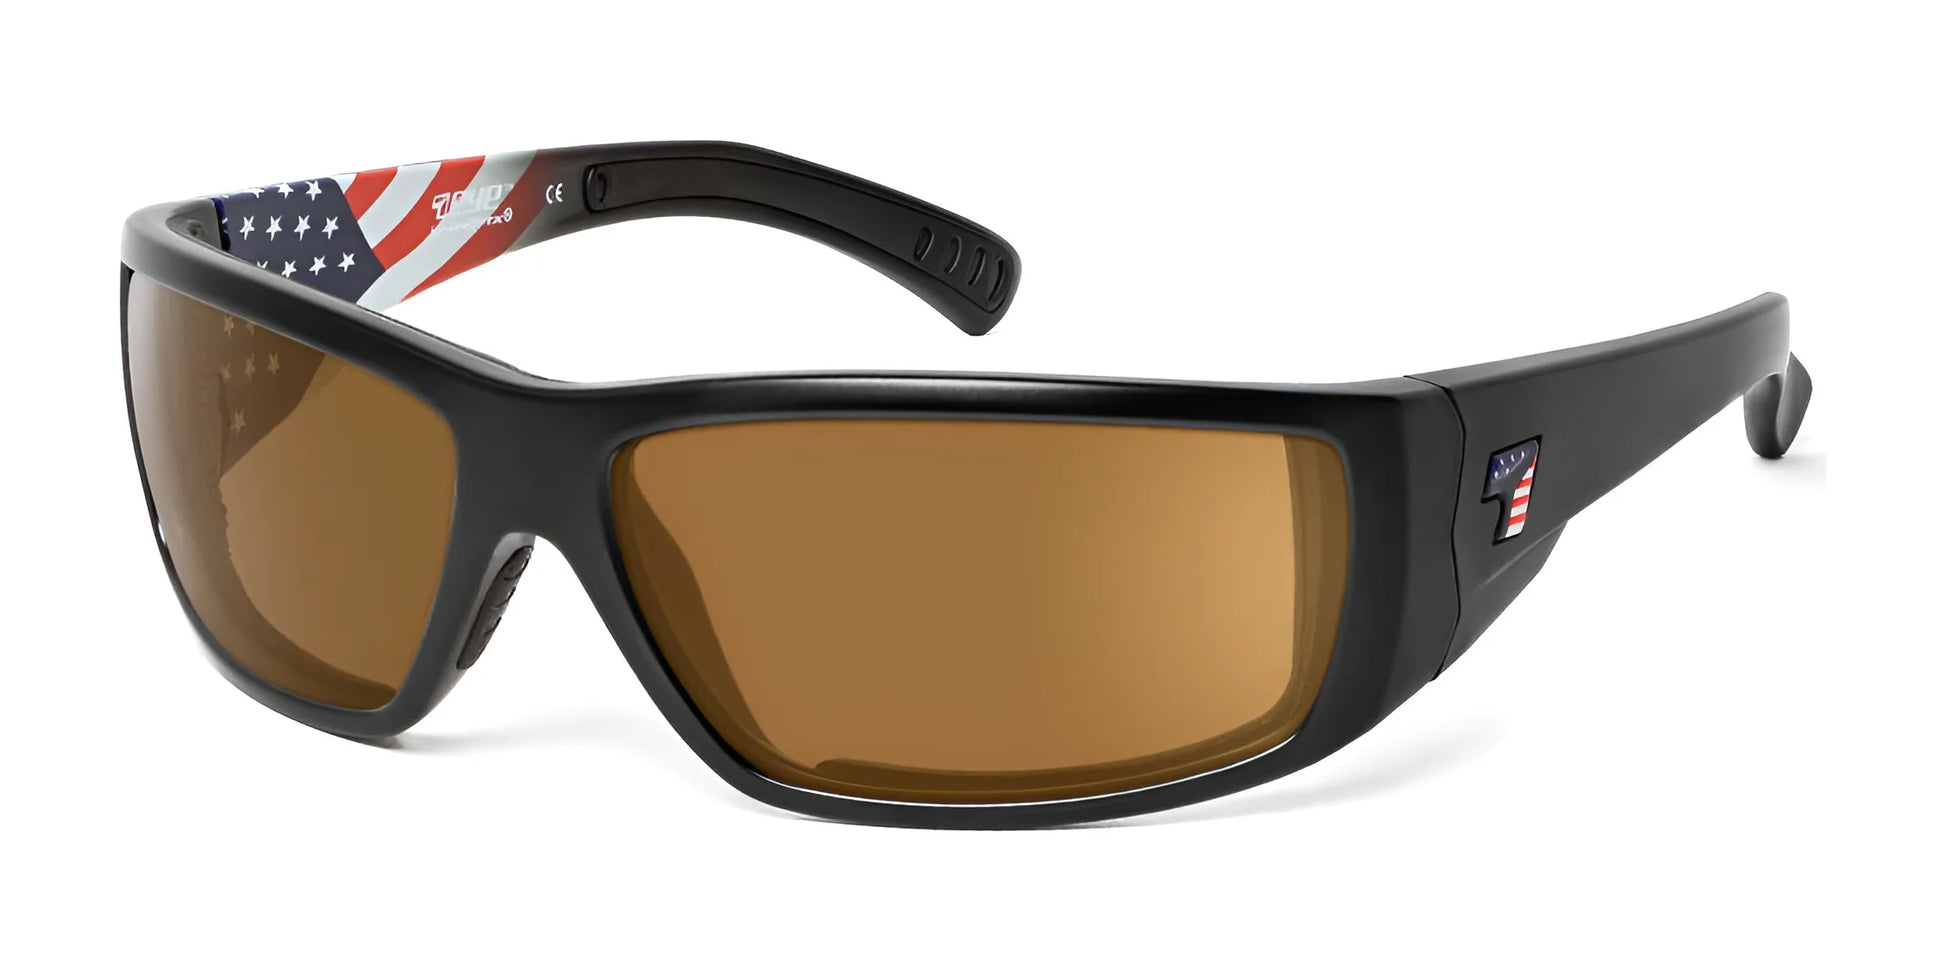 7eye Maestro Sunglasses Patriot USA Series / Copper